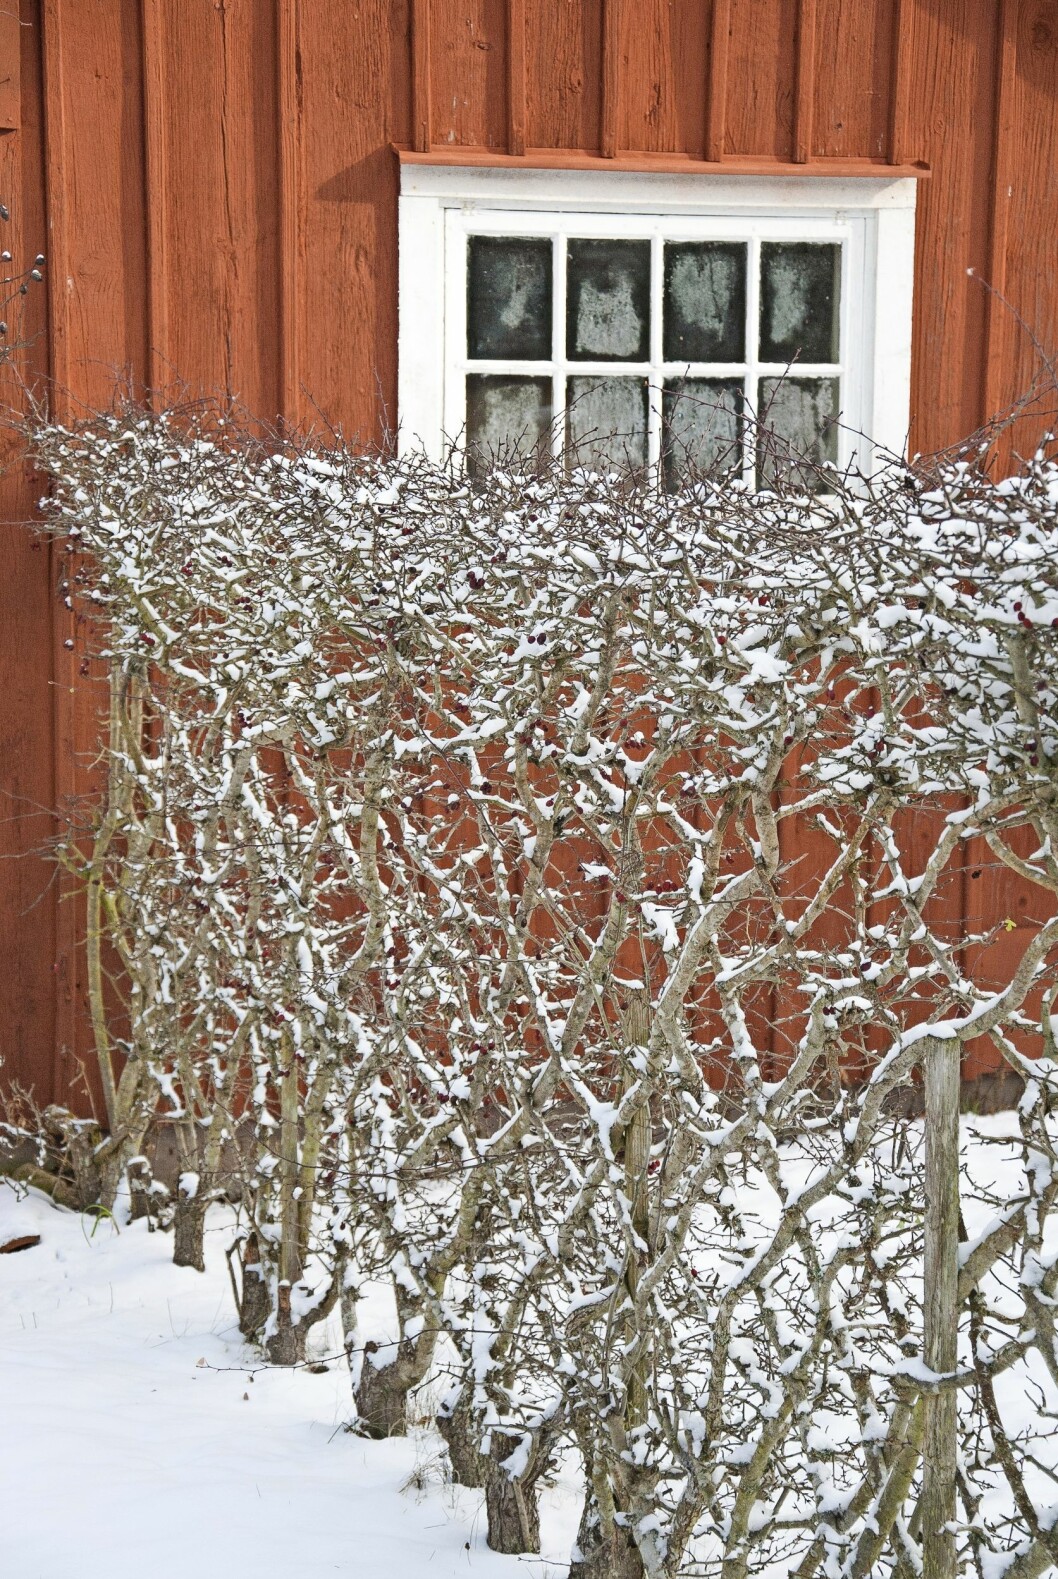 En flätad häck eller ett spaljerat fruktträd blir vackra skulpturer i vinterträdgården.